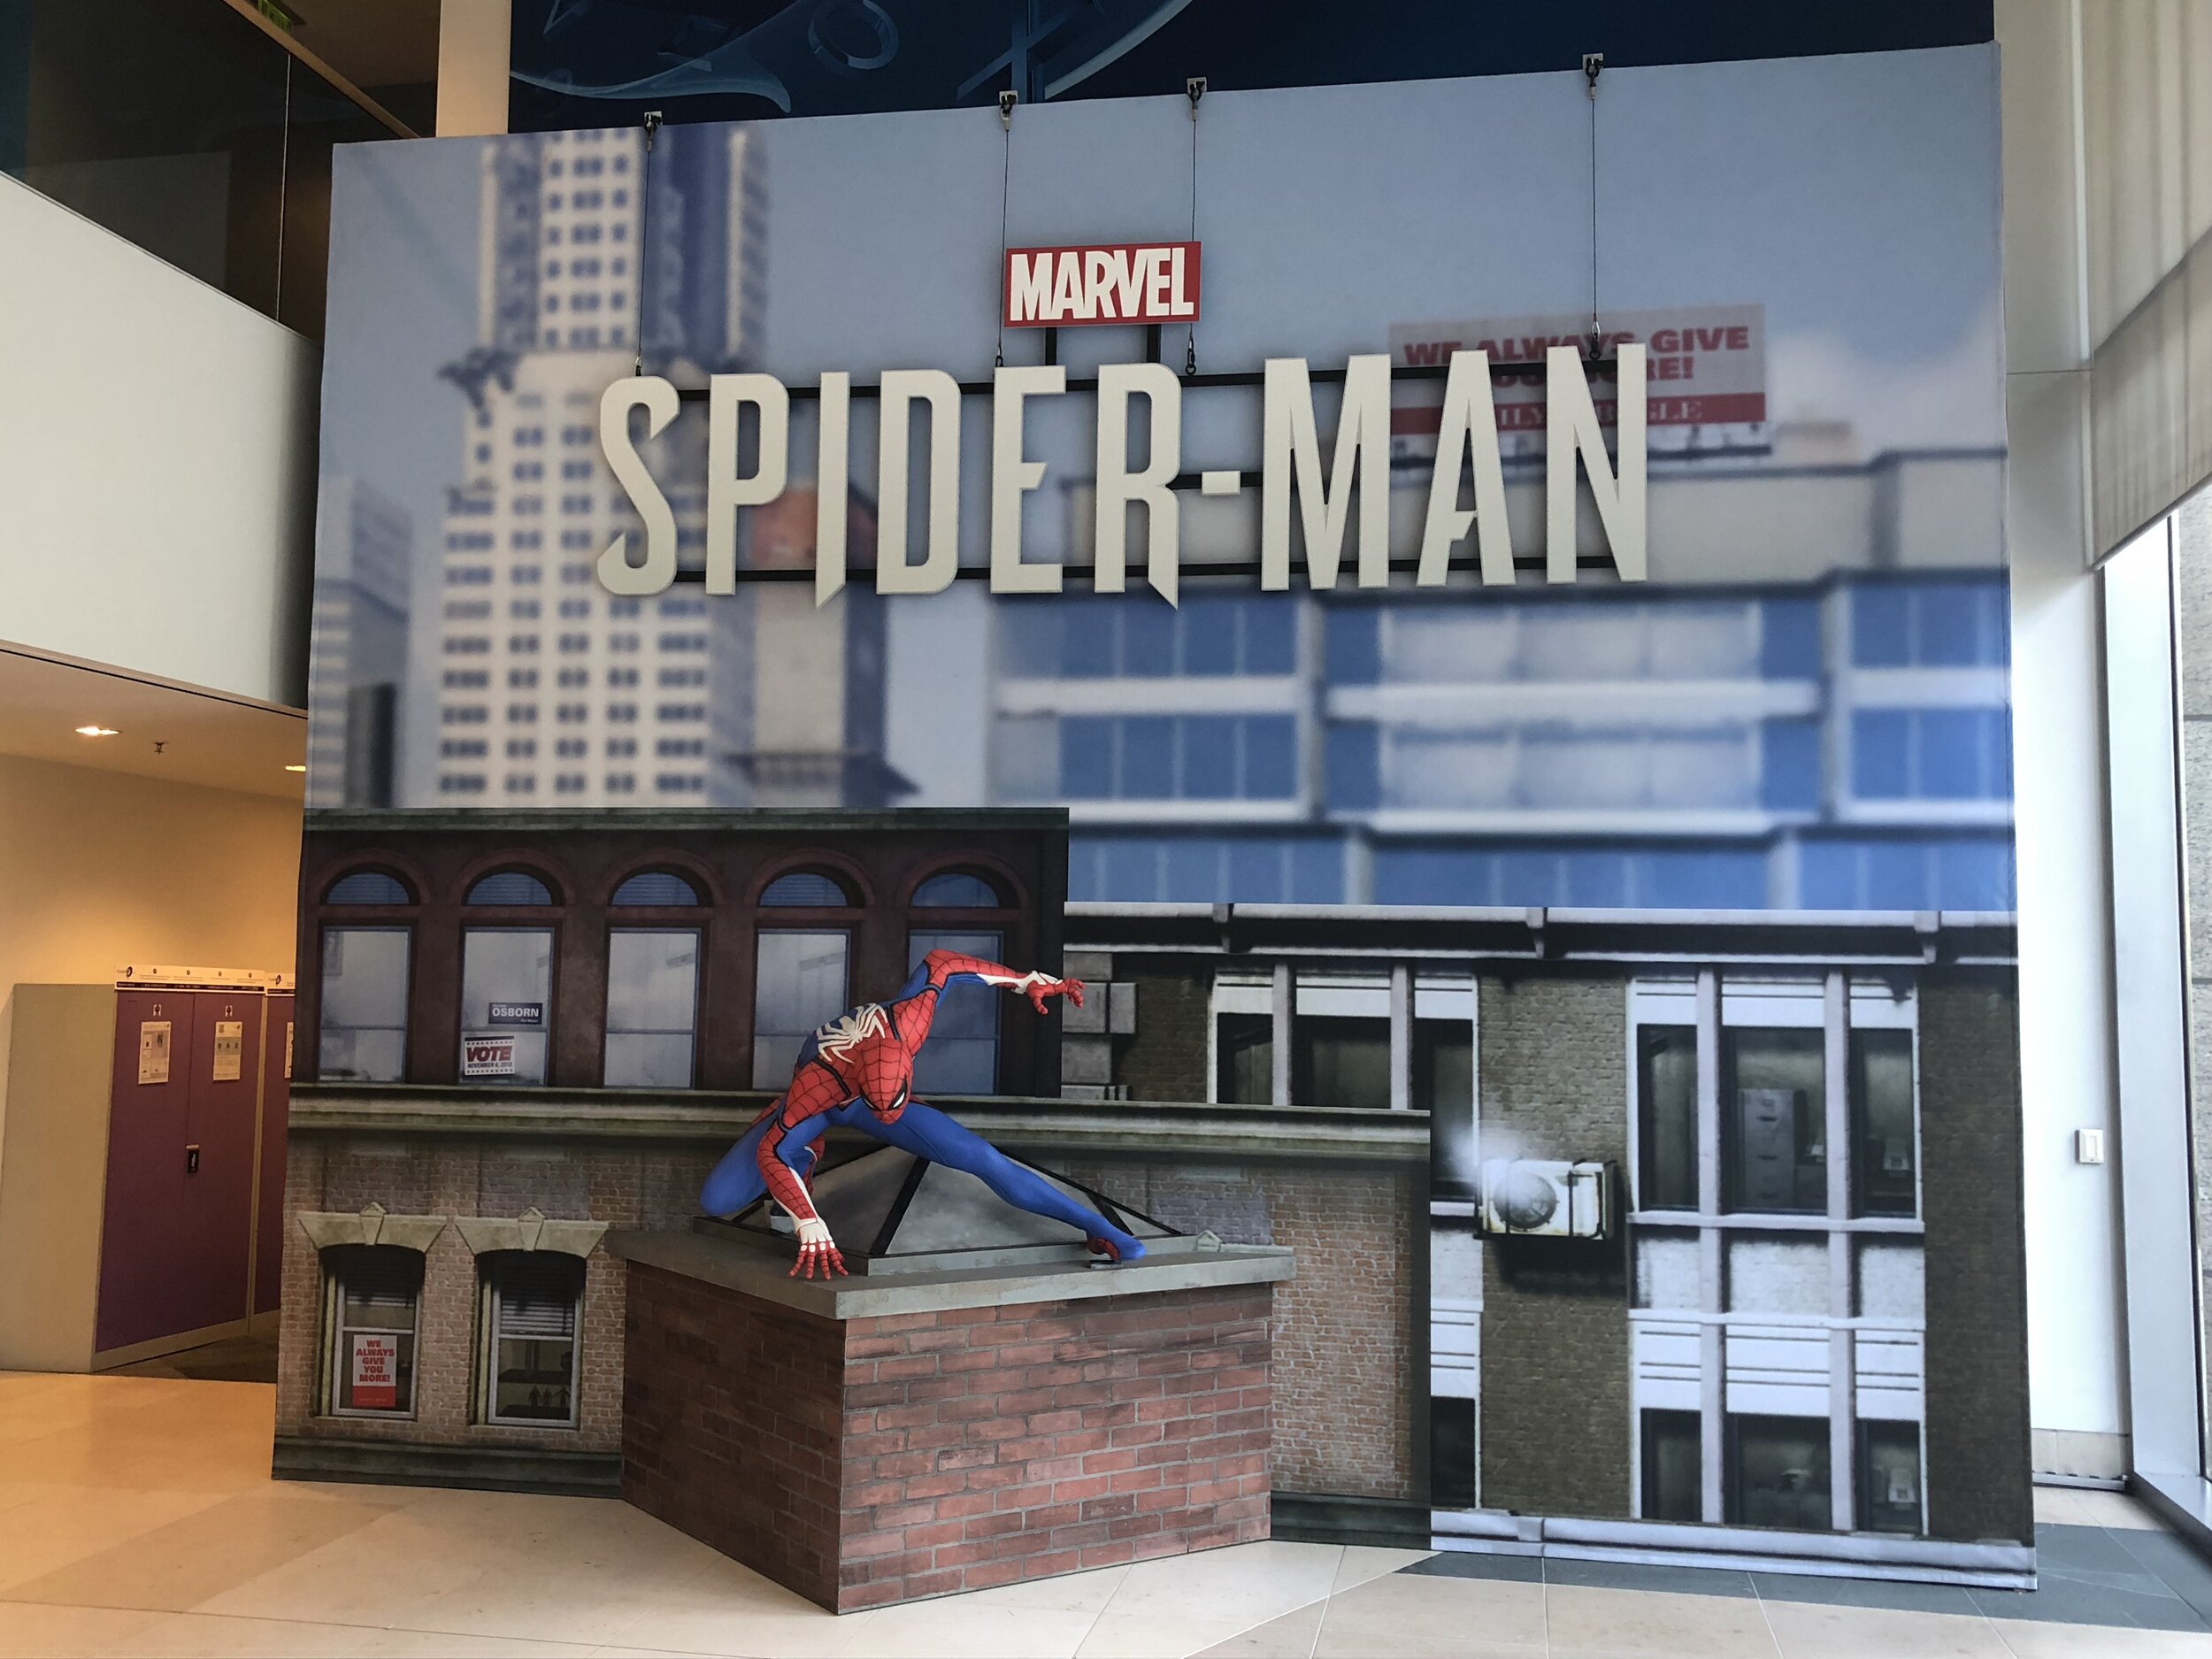 Spiderman_CampusEvent_2018_11.JPG